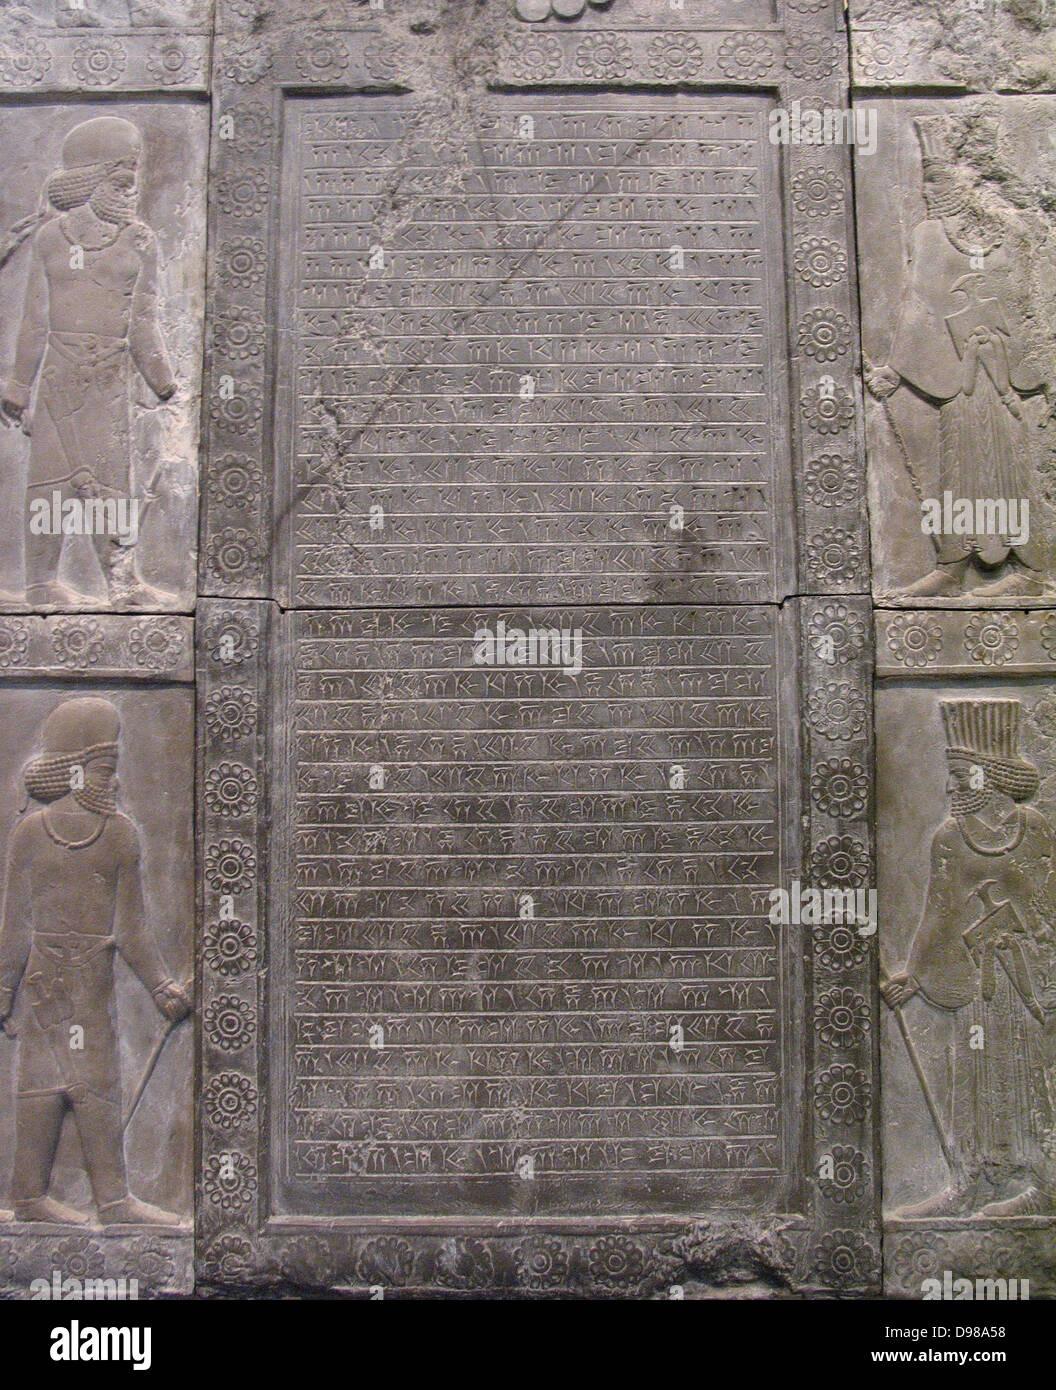 Cette inscription est écrite dans un ancien script appelé l'écriture cunéiforme. Il enregistre que le roi Artaxerxès III (359-338BC) reconstruit l'escalier sur lequel cette inscription a été sculpté. L'escalier était une altération plus tard au palais de Darius. Banque D'Images